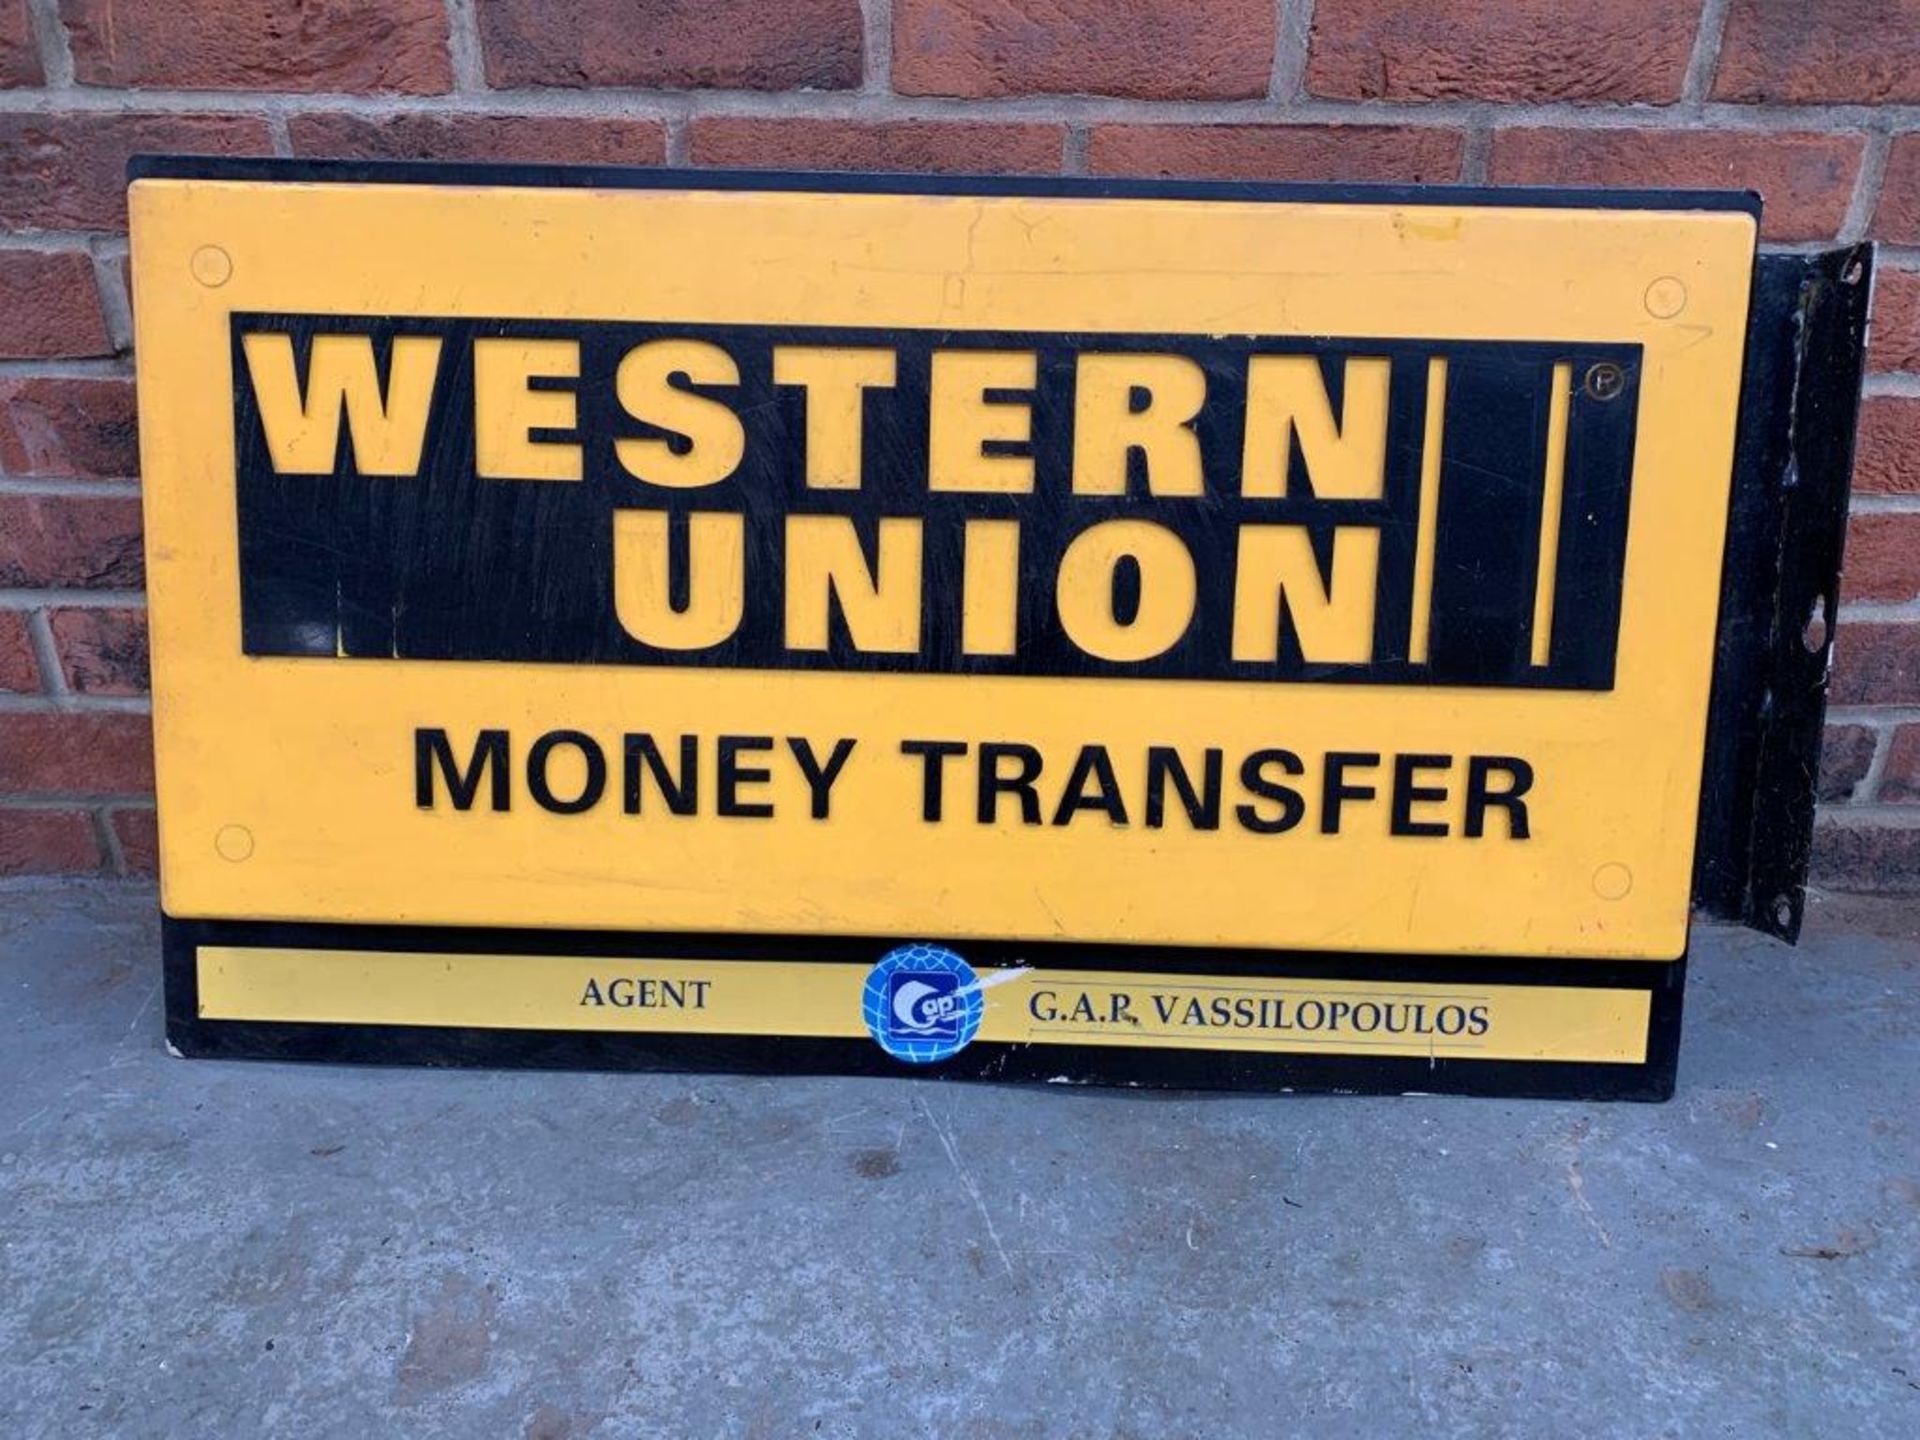 Western Union Double Sided Illuminated Flanged Sign - Image 2 of 2